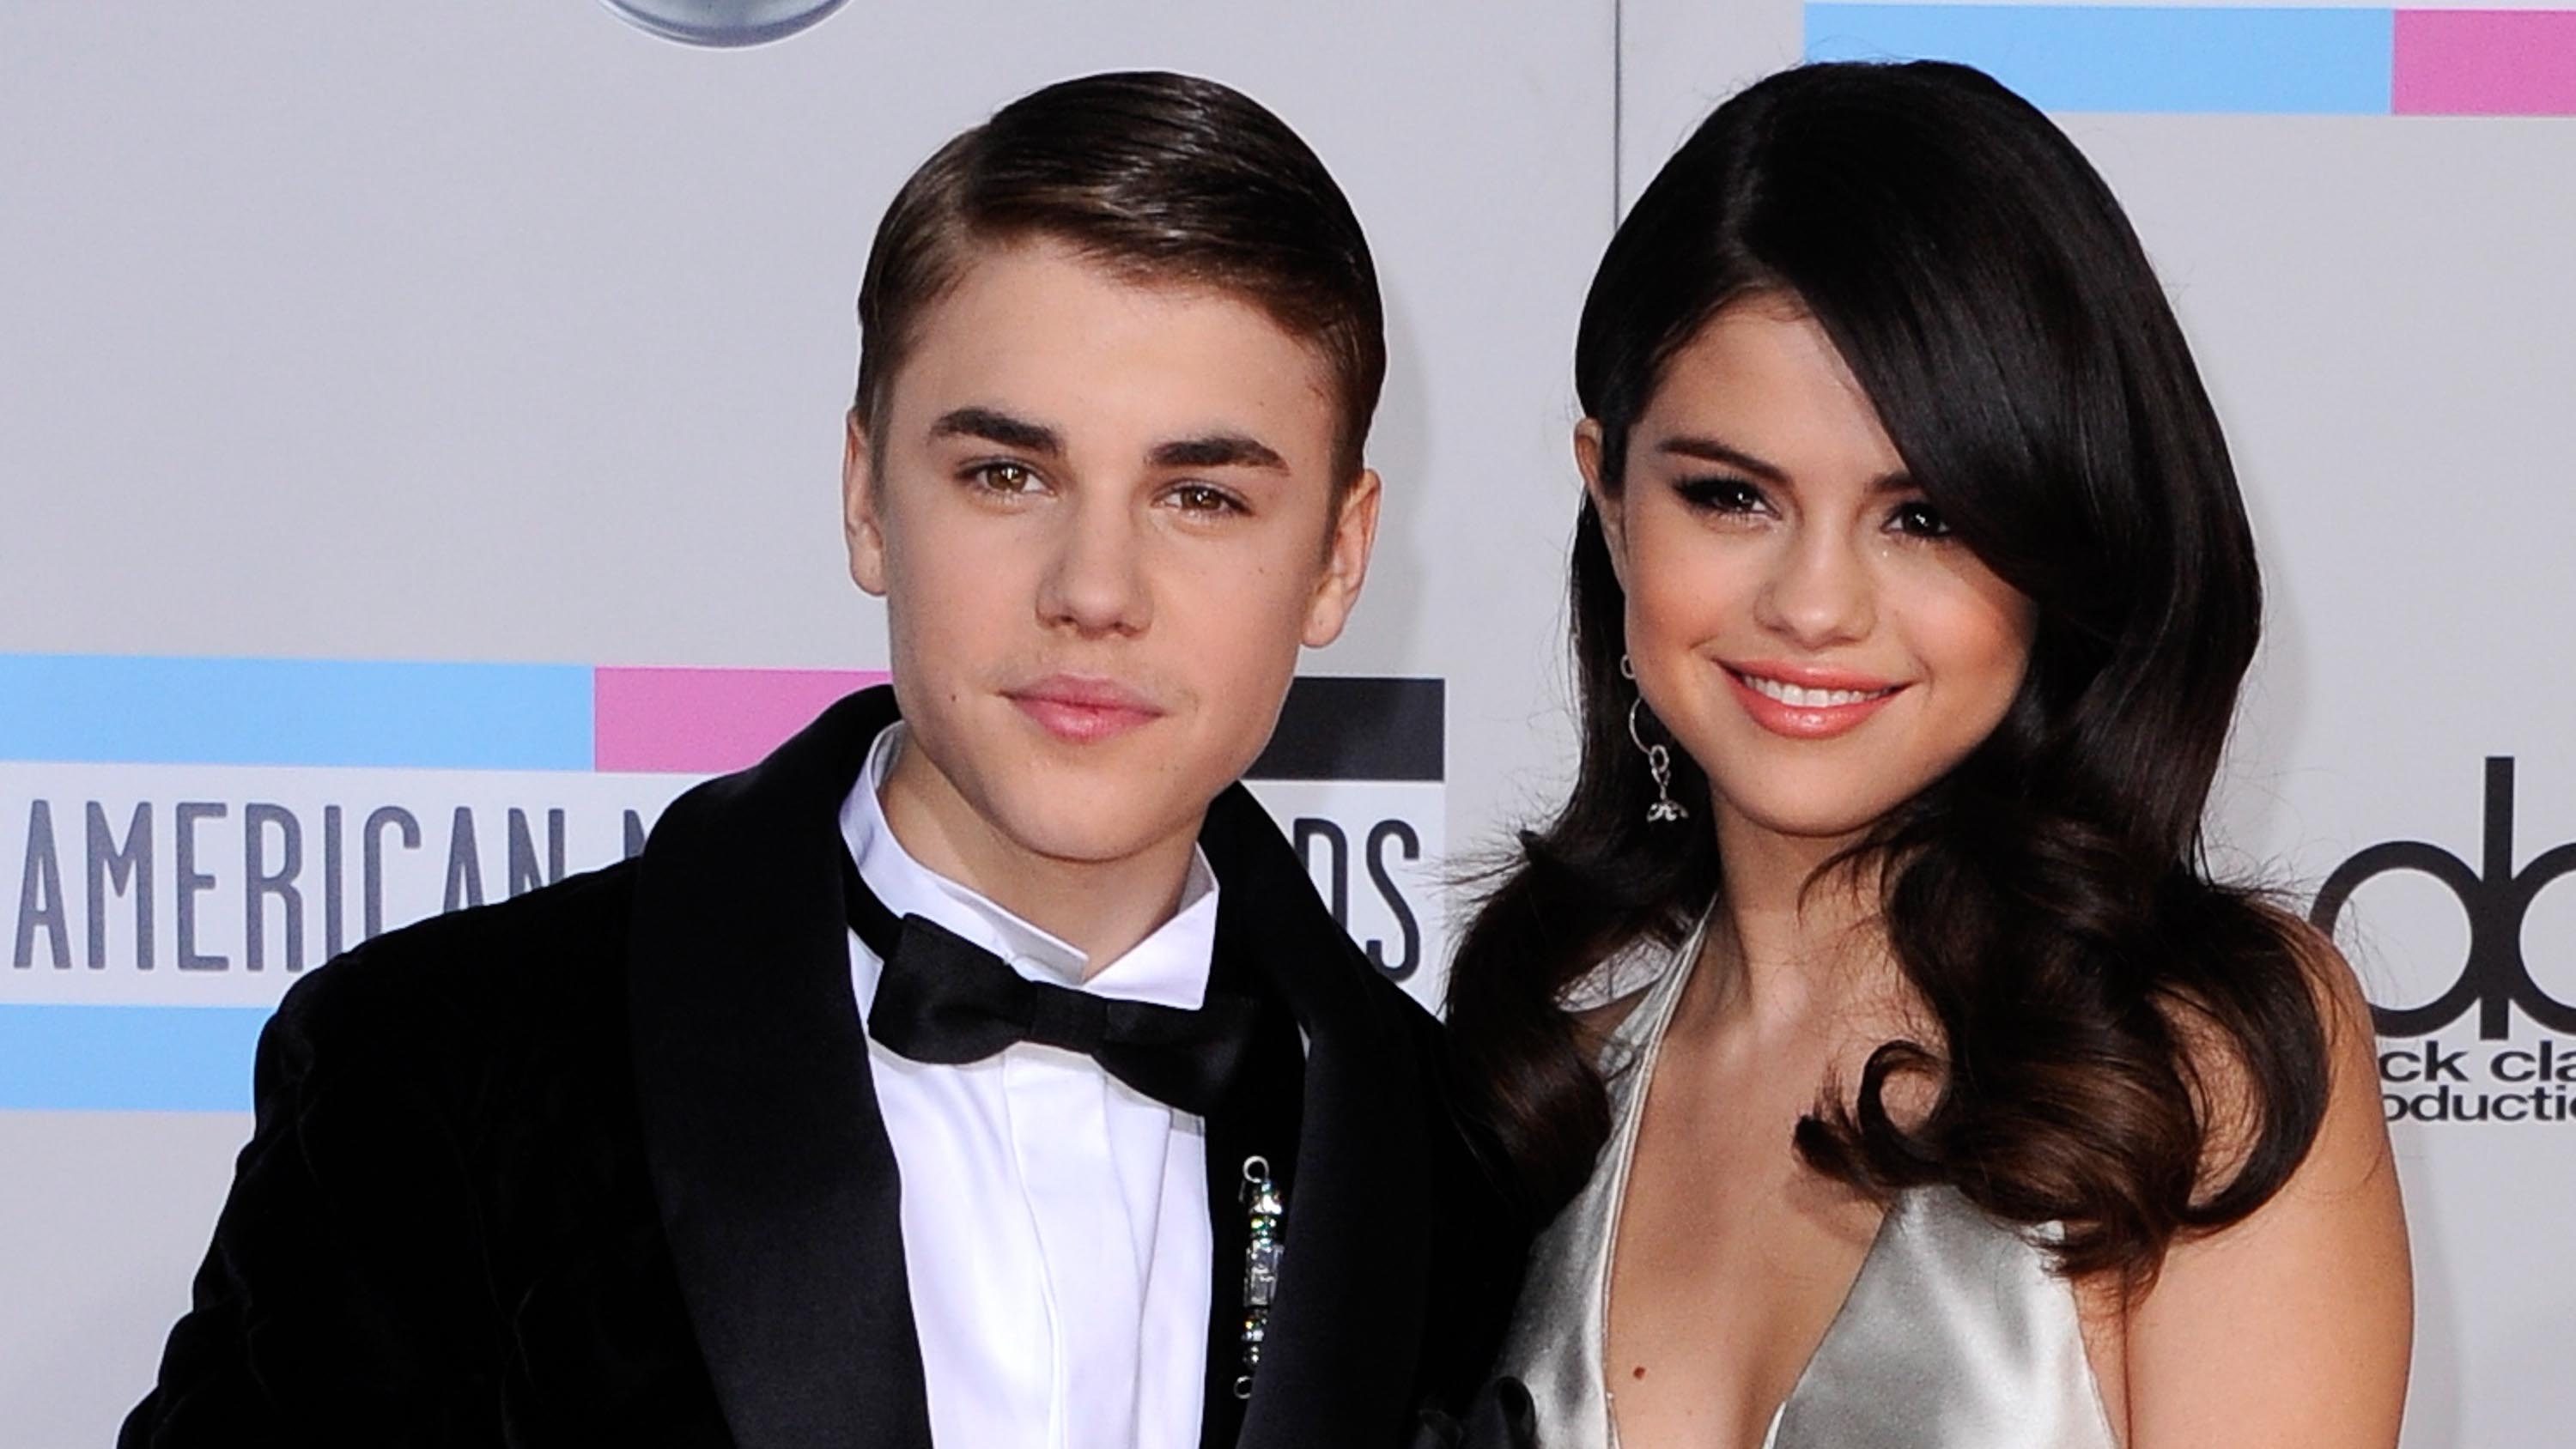 Justin Bieber dan Selena Gomez saat menghadiri American Music Awards ke-39 di Los Angeles, California, pada 2011 lalu. Foto oleh Paul Buck/EPA